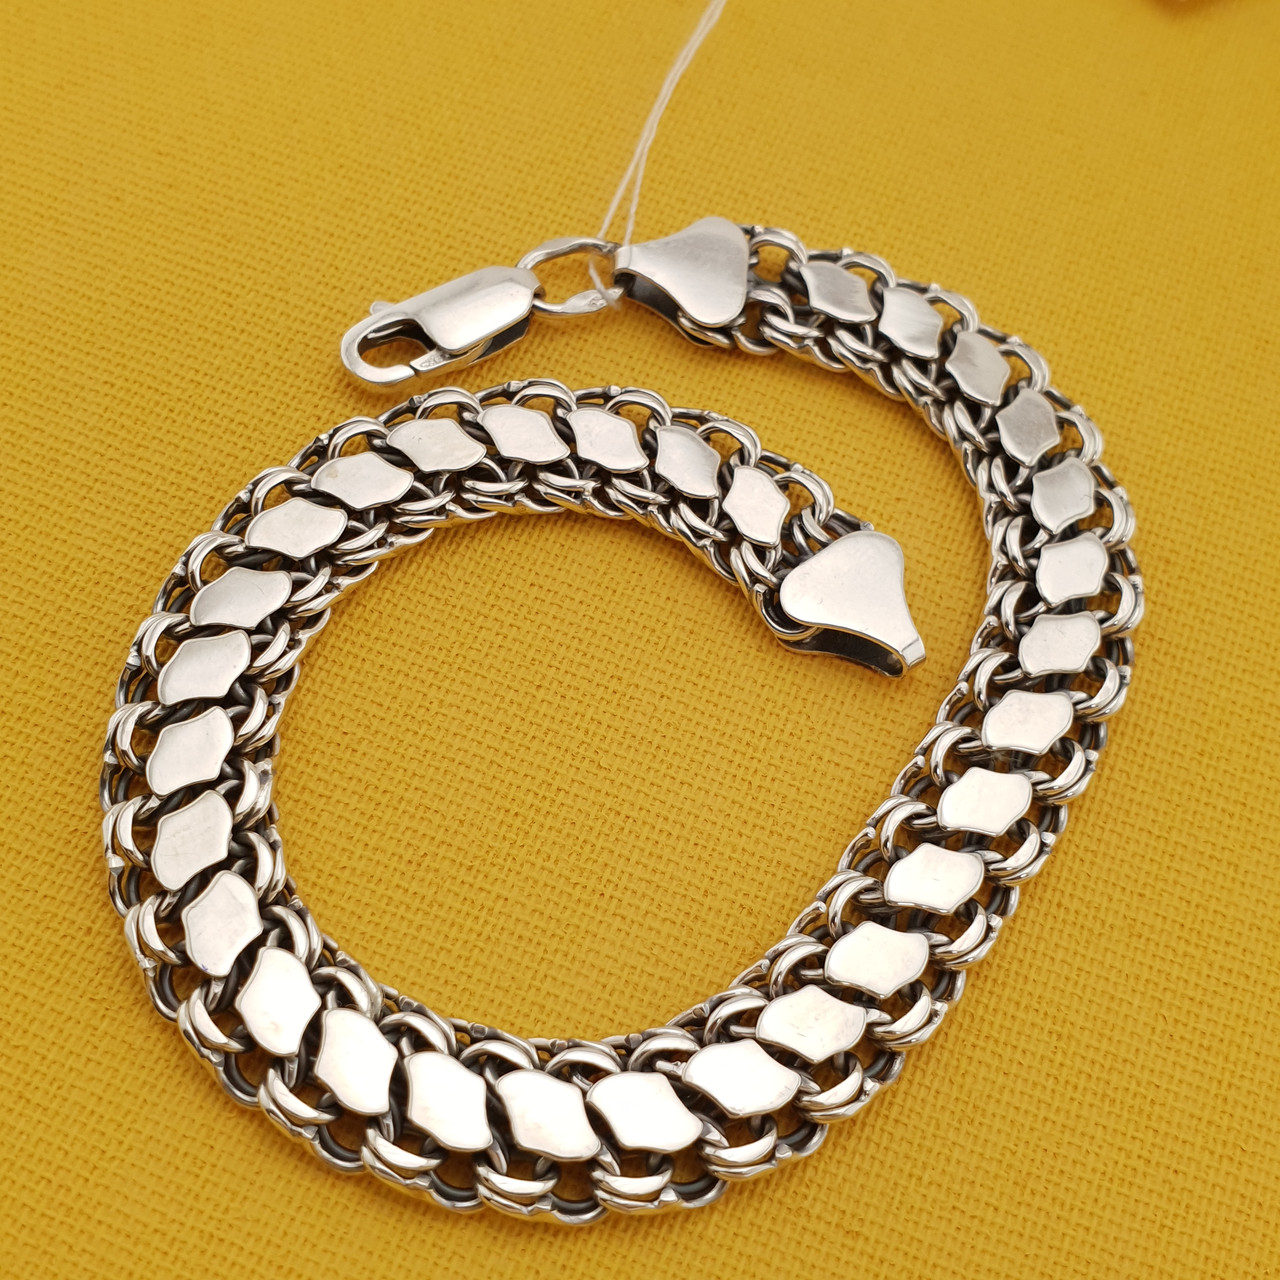 Чоловічий браслет срібло подвійний з накладками. Довжина 21 см, ширина 9 мм